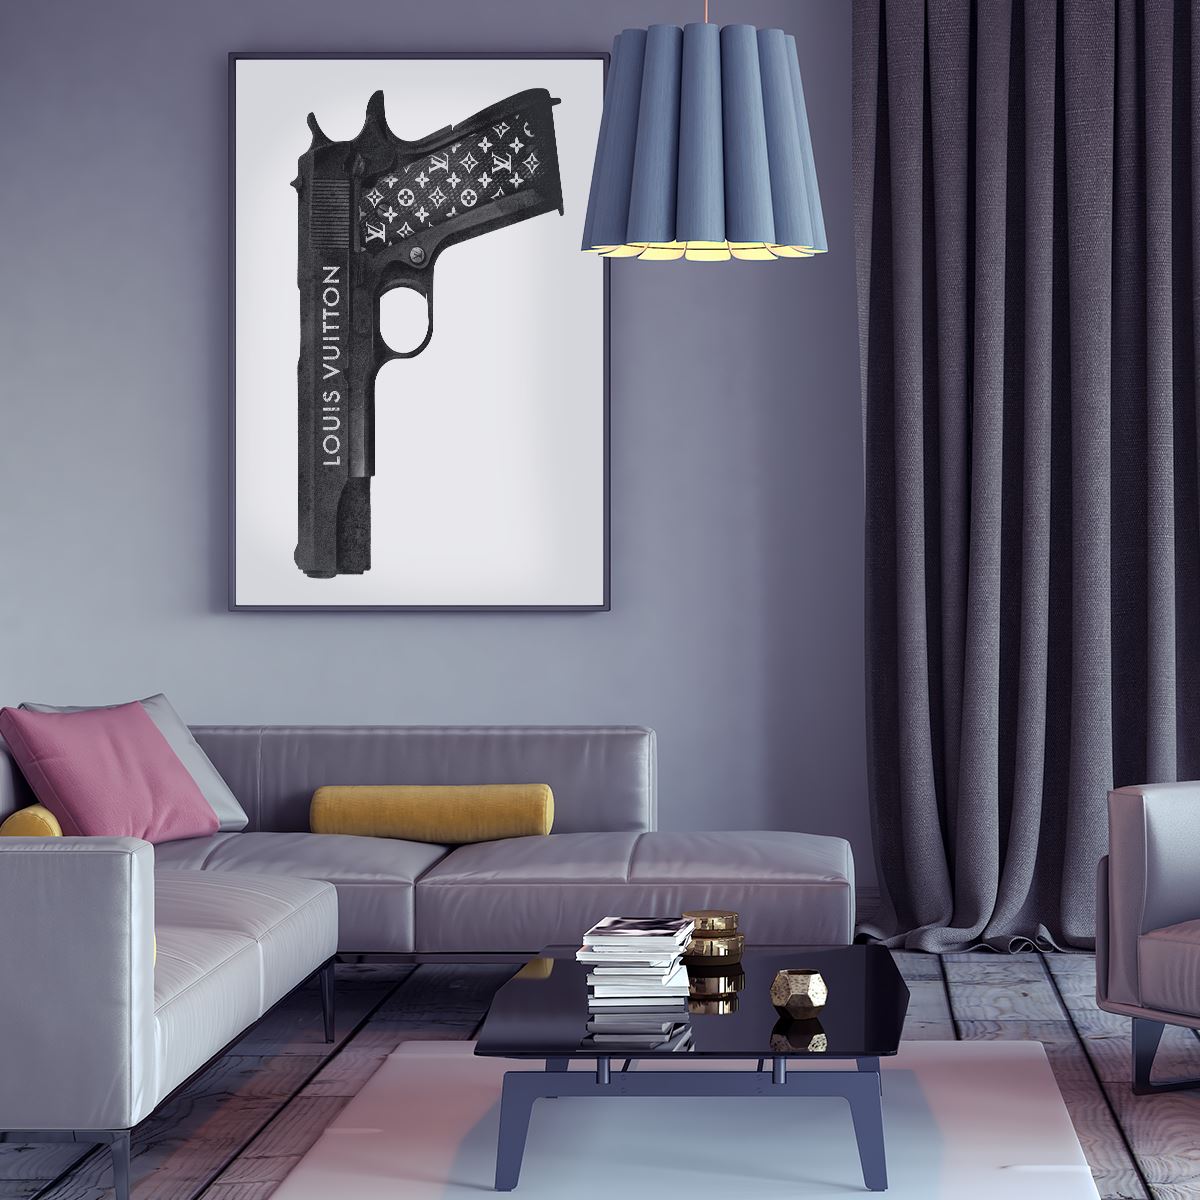 Louis Vuitton Gun by Street Art